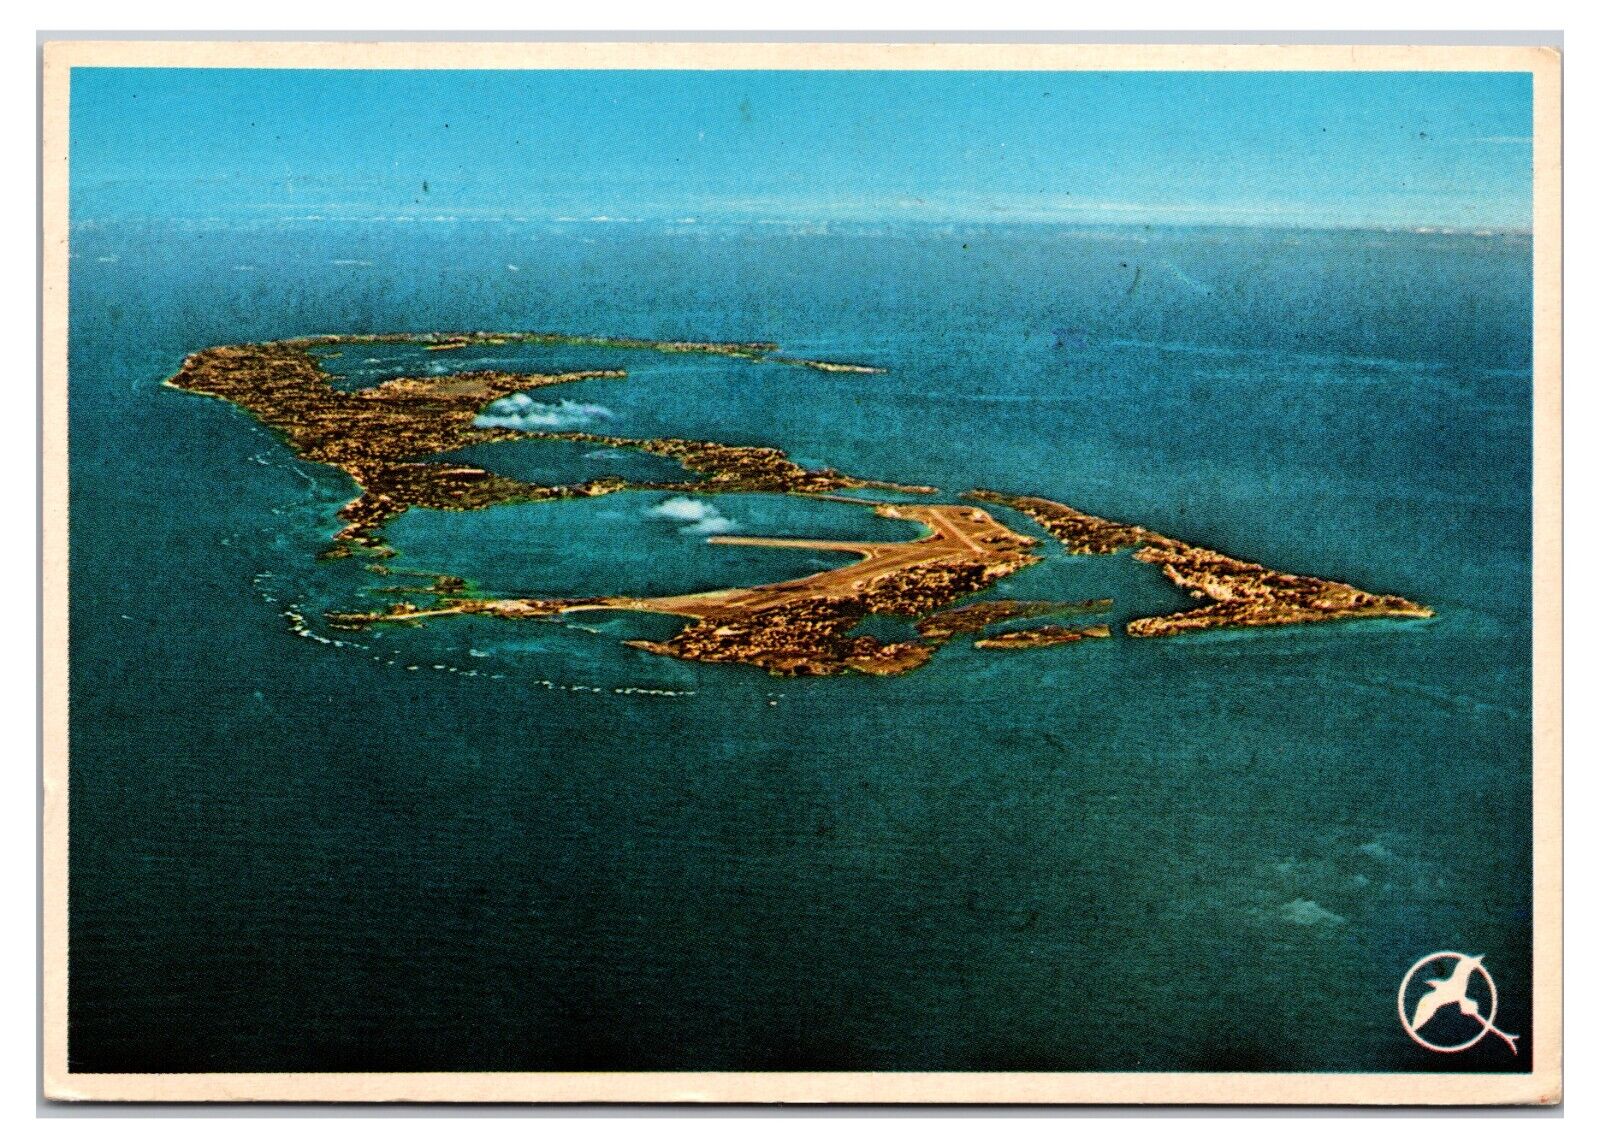 Vintage 1980s - Aerial View of Bermuda From Air, Bermuda Postcard (Posted 1985)